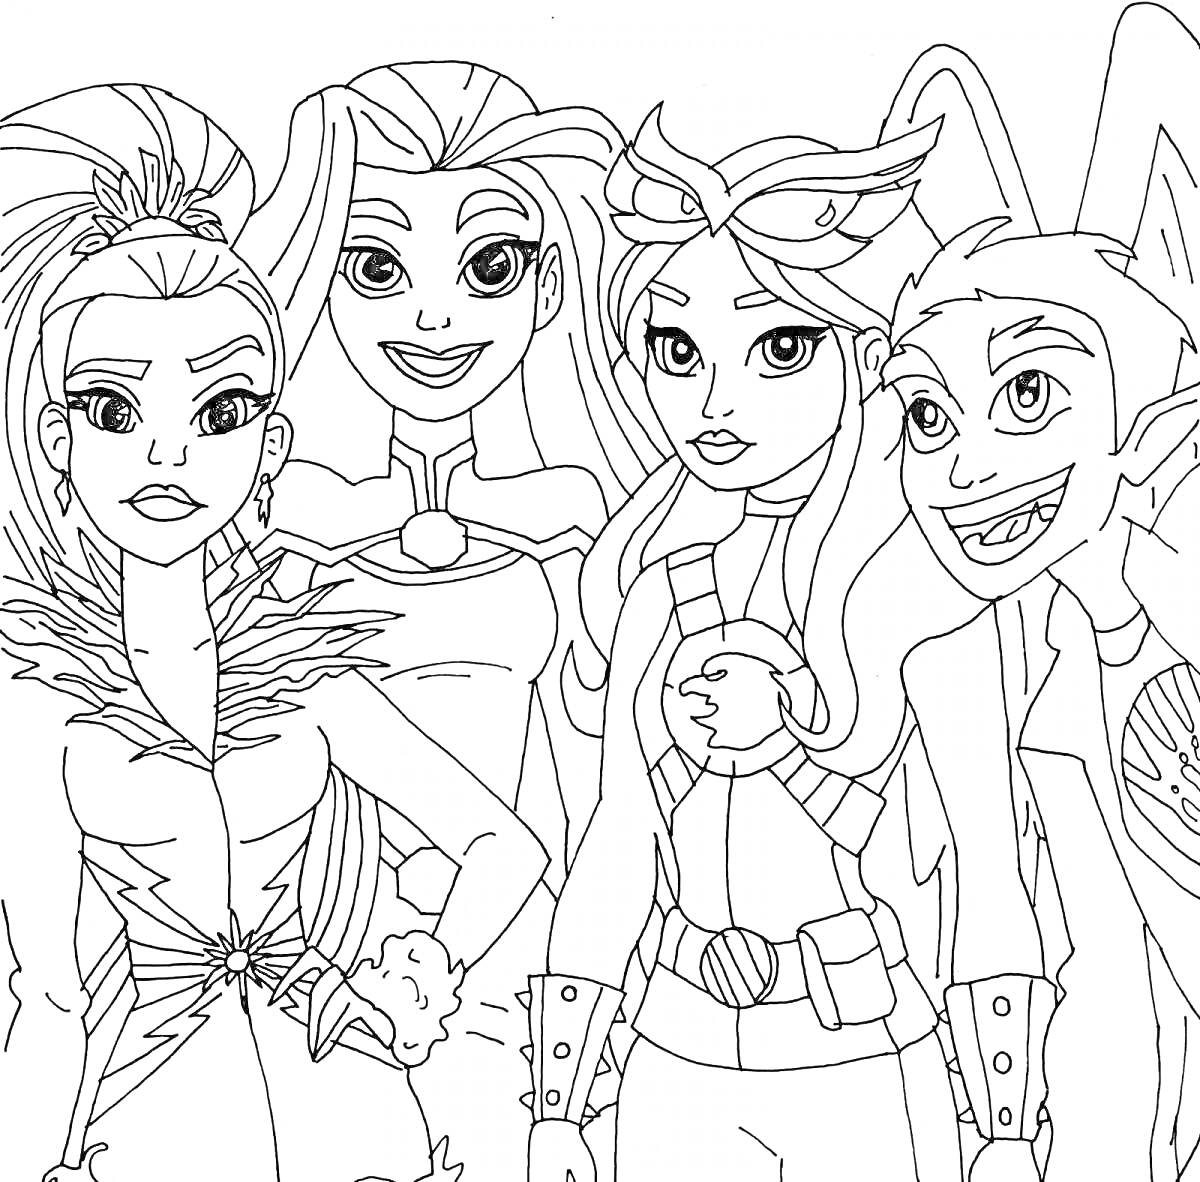 Раскраска Группа персонажей-супергероев с различными костюмами, включая меховые элементы, плащ, очки и аксессуары